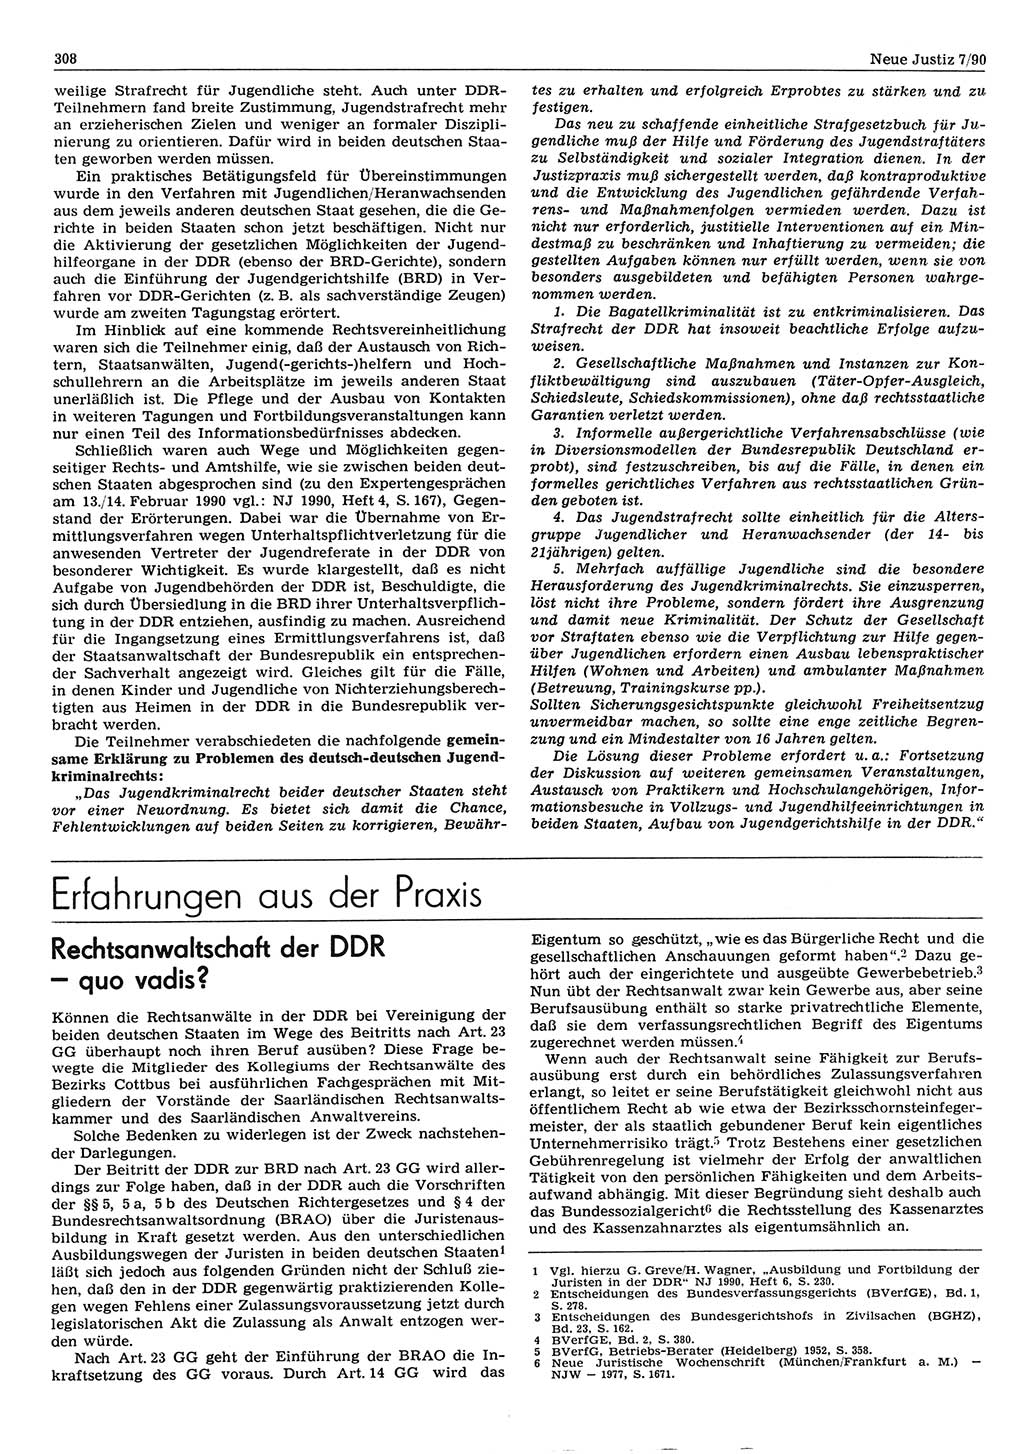 Neue Justiz (NJ), Zeitschrift für Rechtsetzung und Rechtsanwendung [Deutsche Demokratische Republik (DDR)], 44. Jahrgang 1990, Seite 308 (NJ DDR 1990, S. 308)